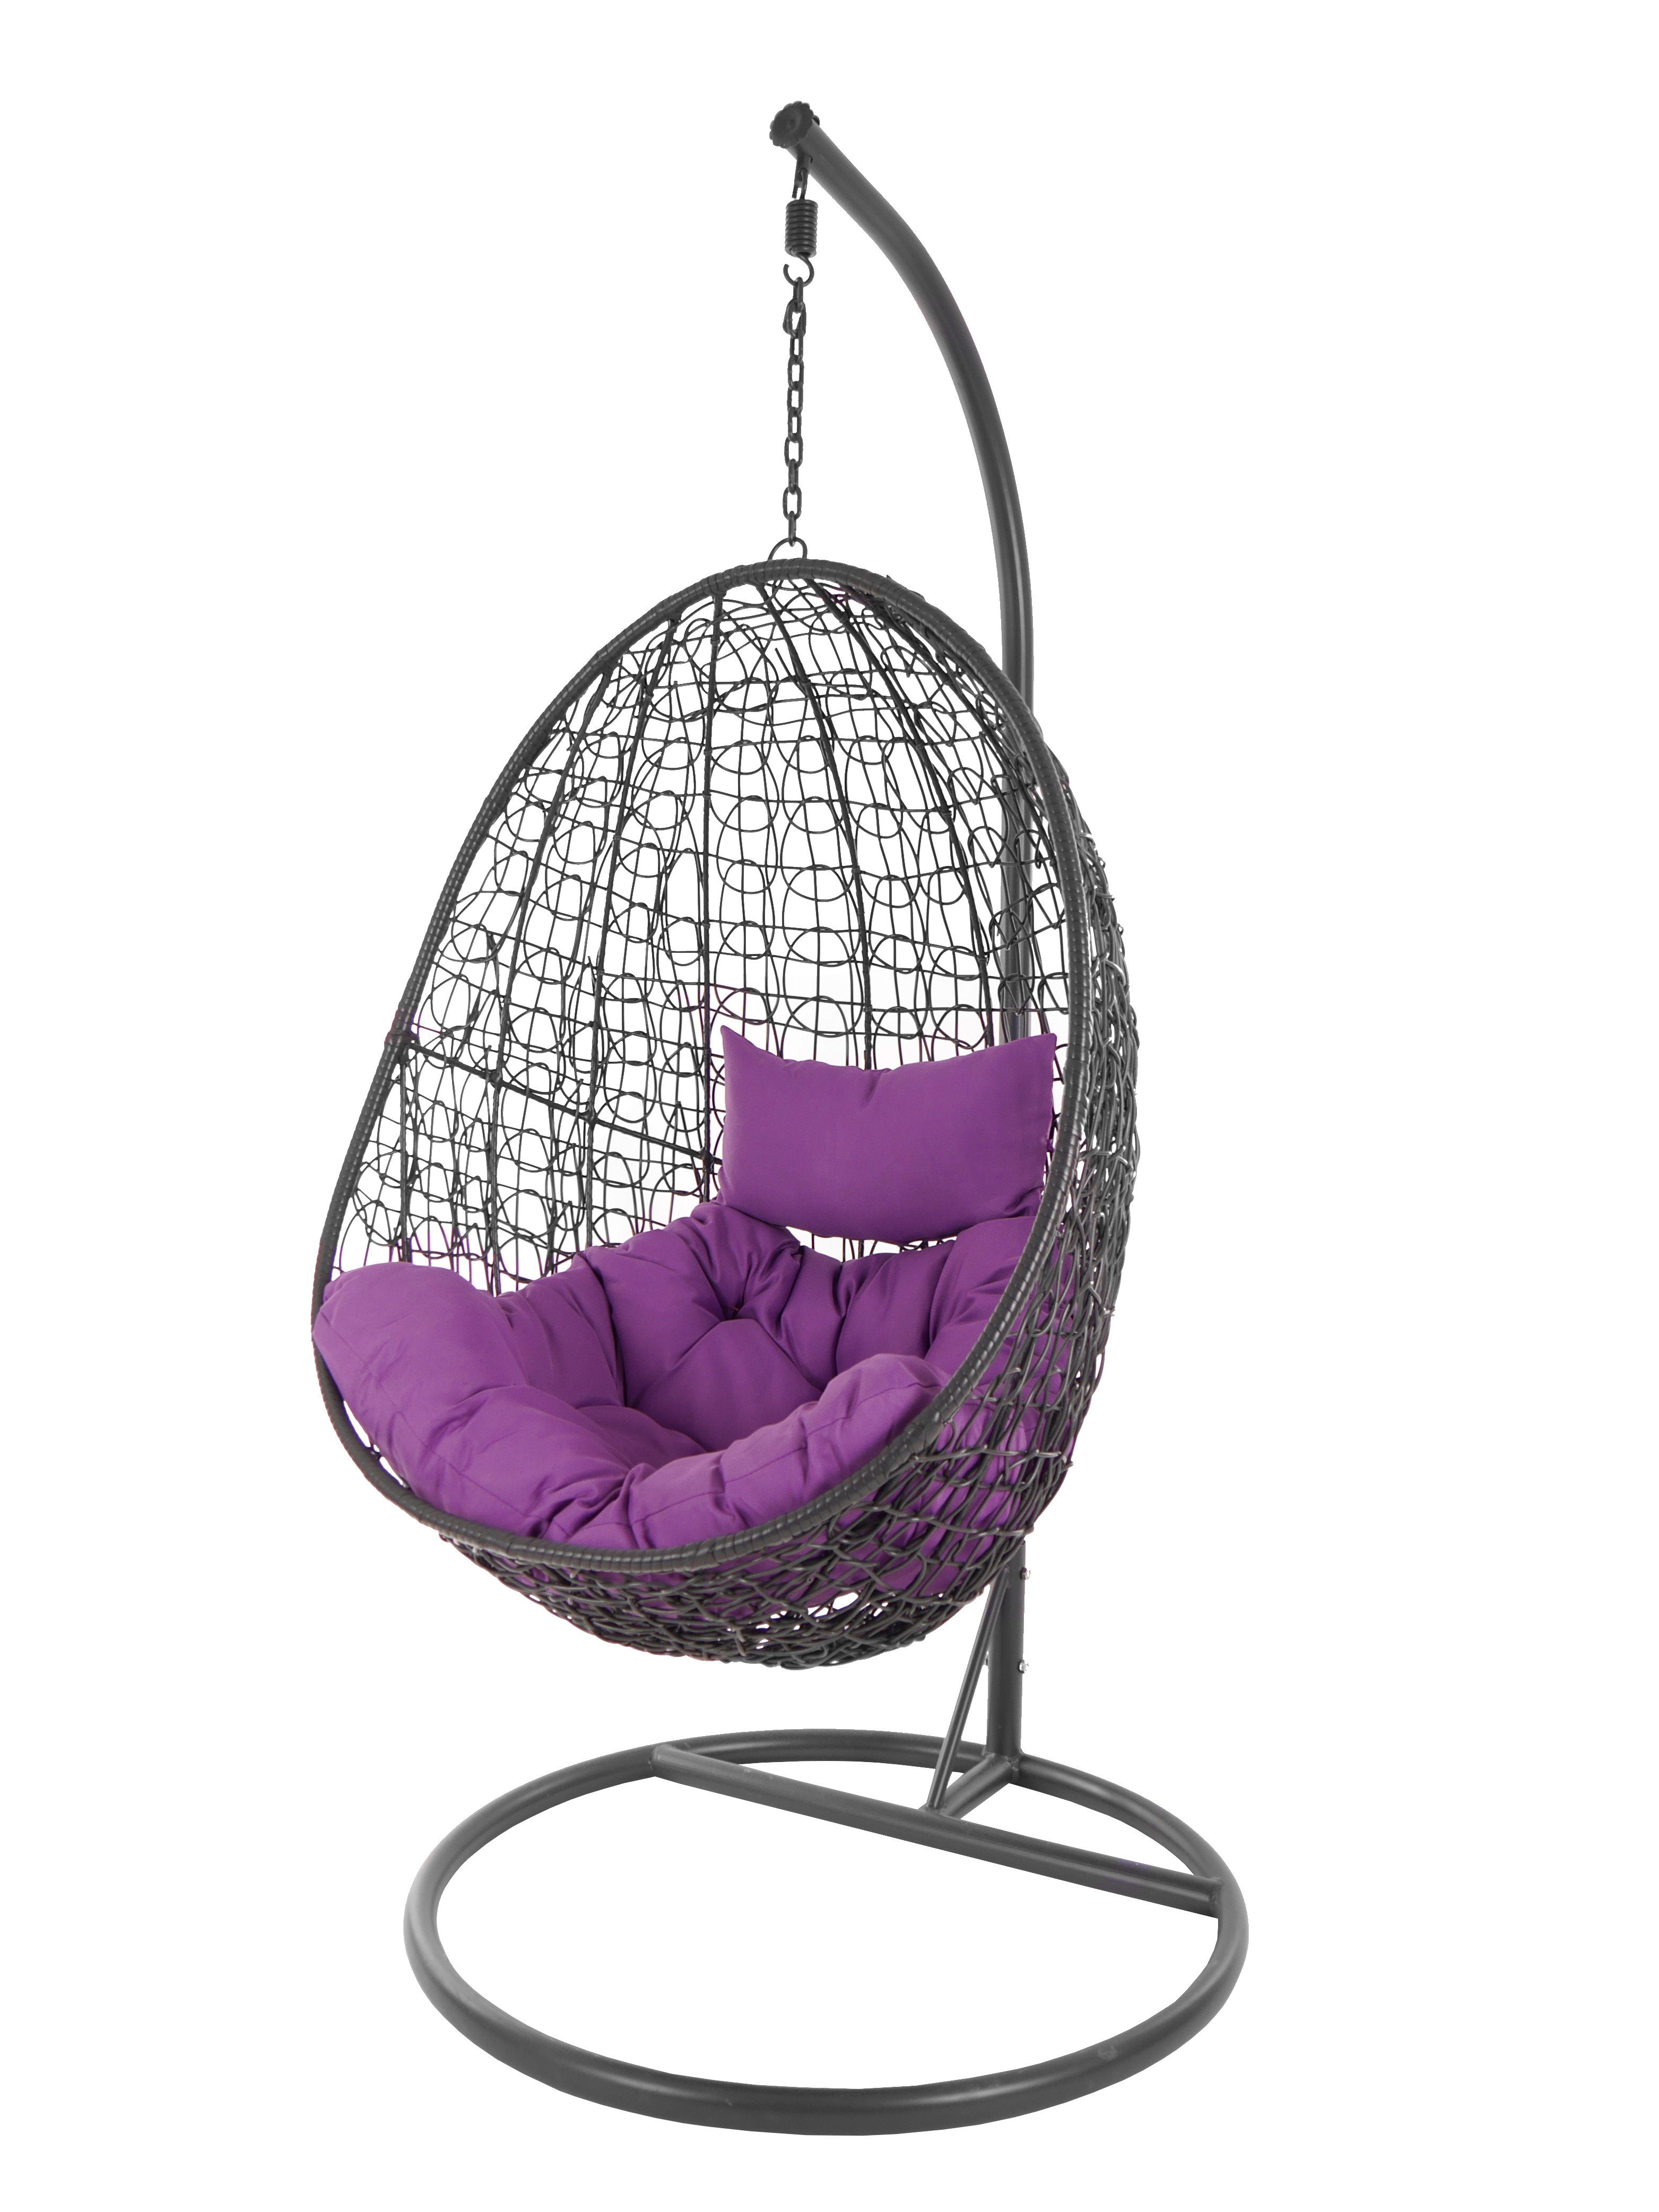 (4050 Schwebesessel Hängesessel lila moderner Loungemöbel und Capdepera Kissen, Gestell mit violet) Chair, Hängesessel Swing KIDEO anthrazit,